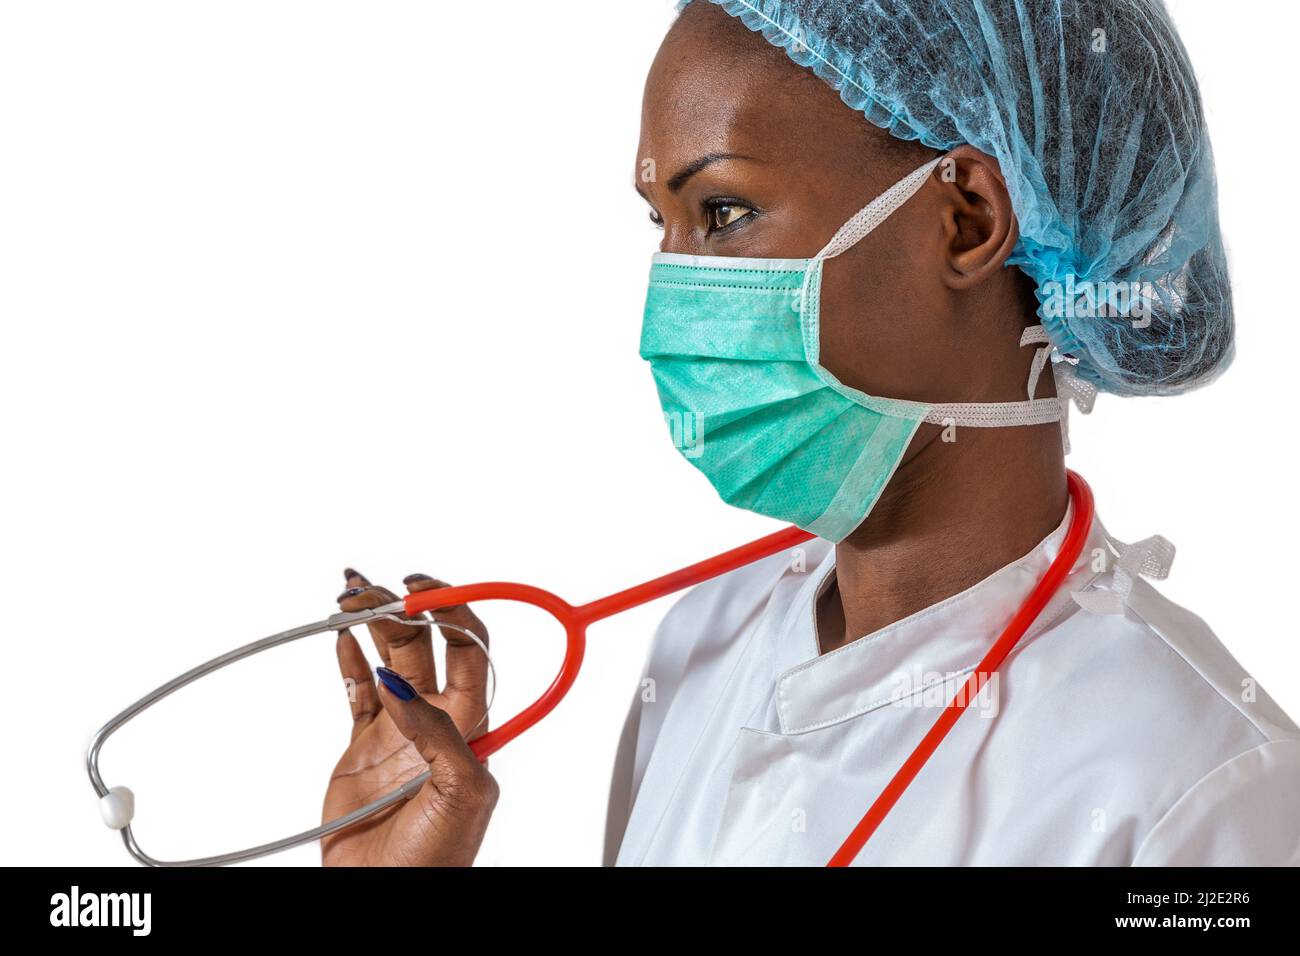 Dottore africano americano femminile, infermiere donna che indossa un cappotto medico, cappuccio, con stetoscopio e maschera. Foto Stock